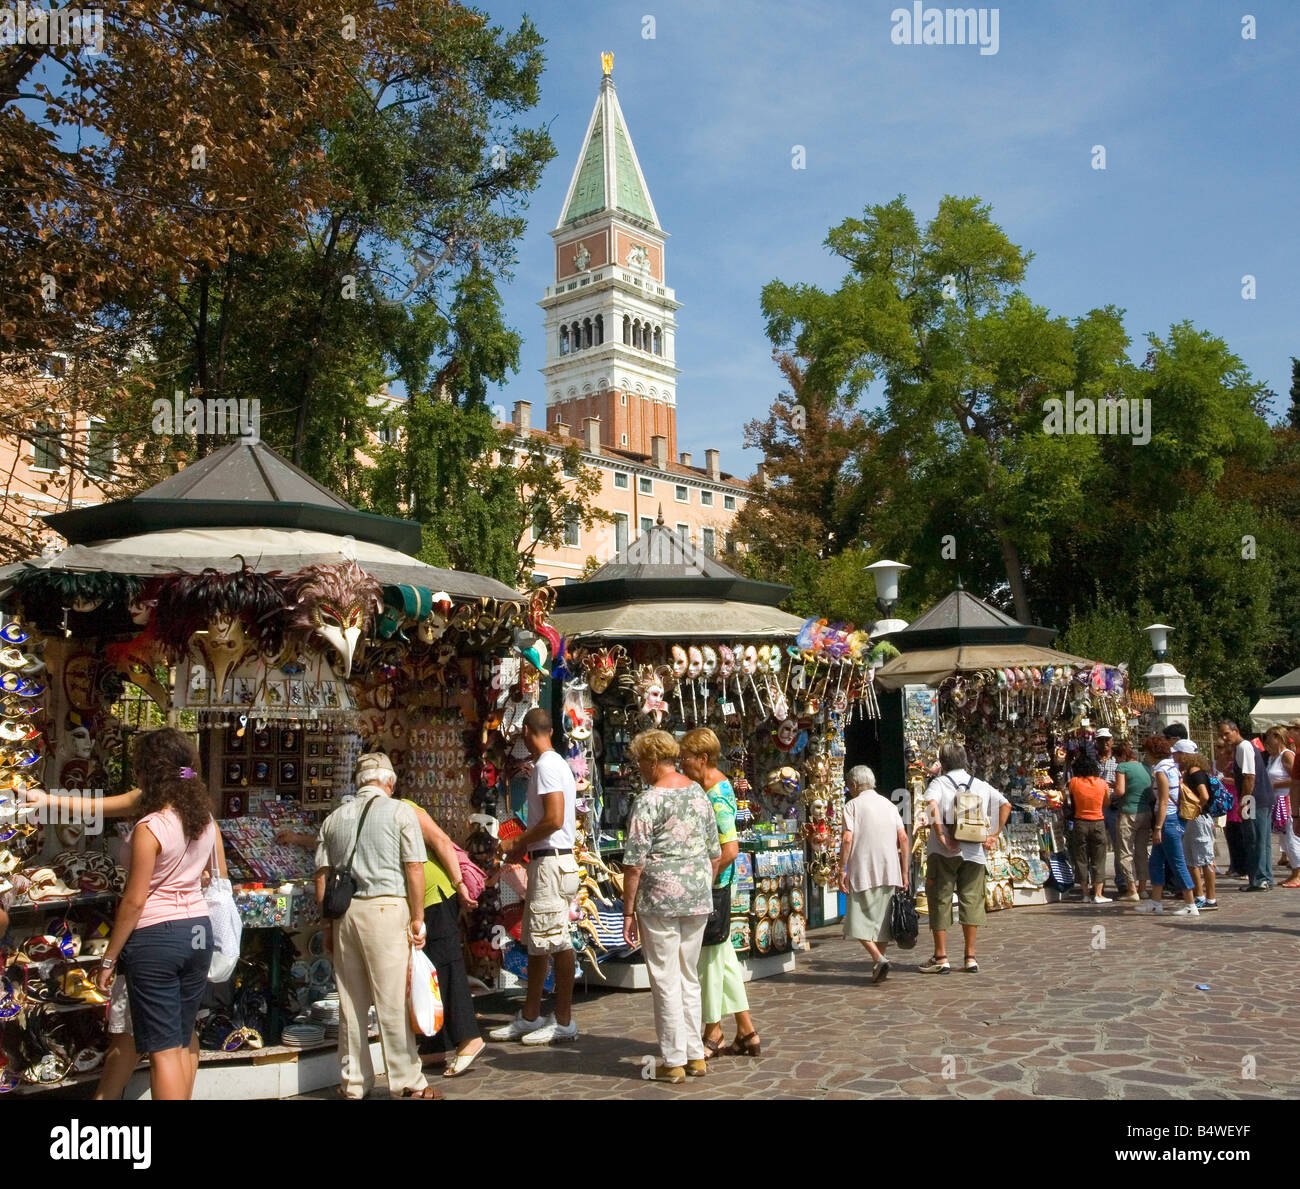 Einkaufen auf dem Markt in der Nähe von San Marco in Venedig  Stockfotografie - Alamy